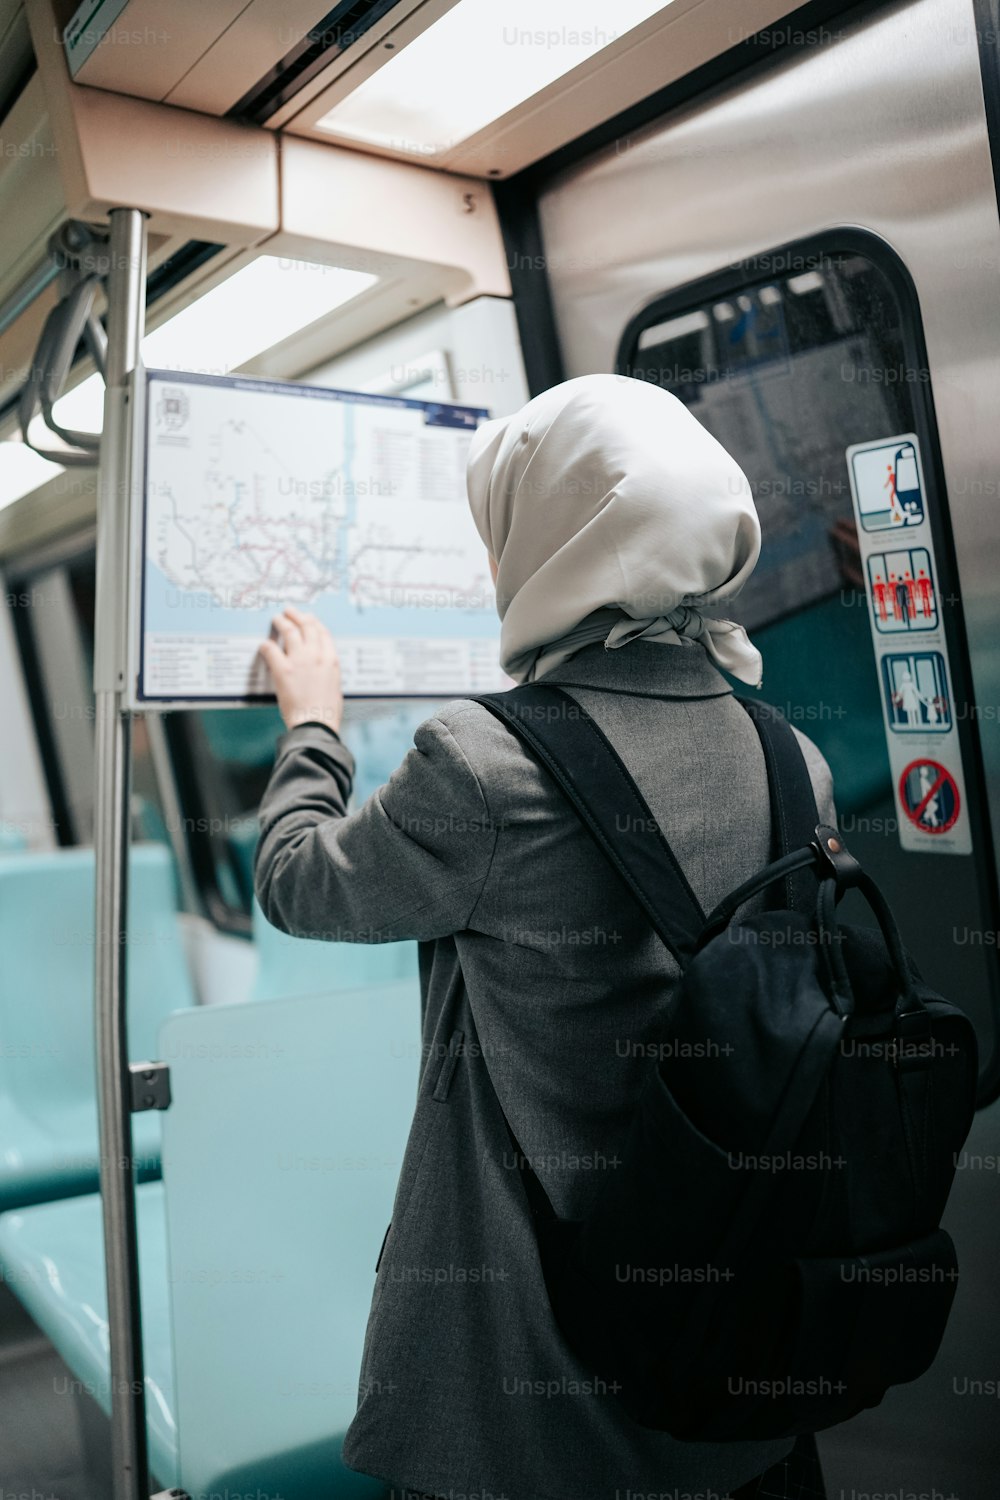 히잡을 쓴 여자가 지도를 보고 있다